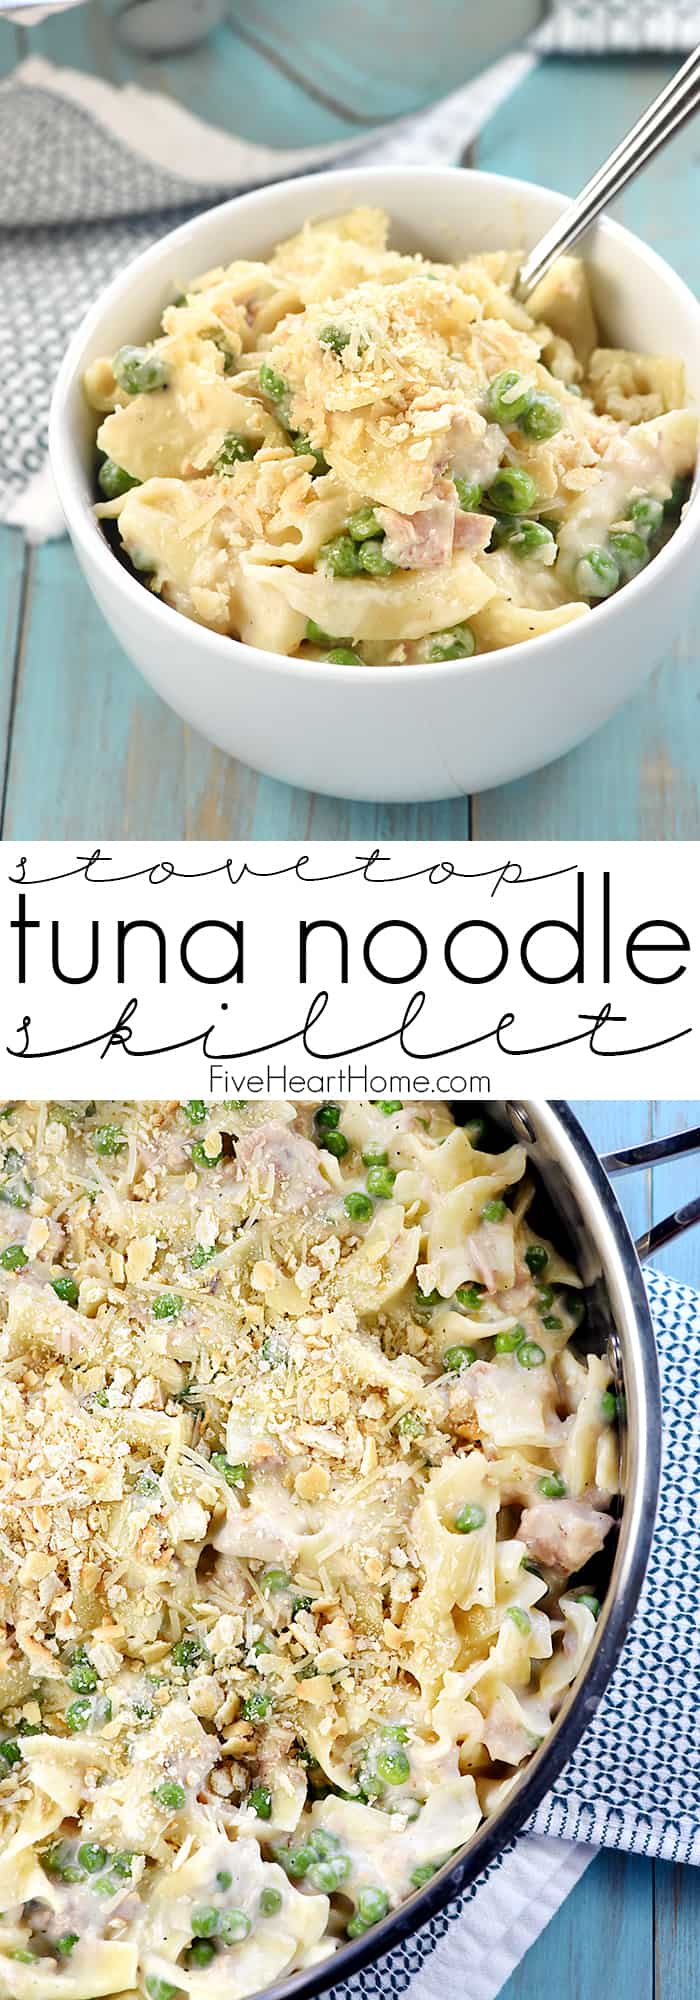 Easy Tuna Noodle Casserole è una ricetta per la cena veloce, facile, from-scratch caricata con tonno, tagliatelle all'uovo, piselli e una cremosa salsa bianca fatta in casa (senza zuppa)! via @fivehearthome